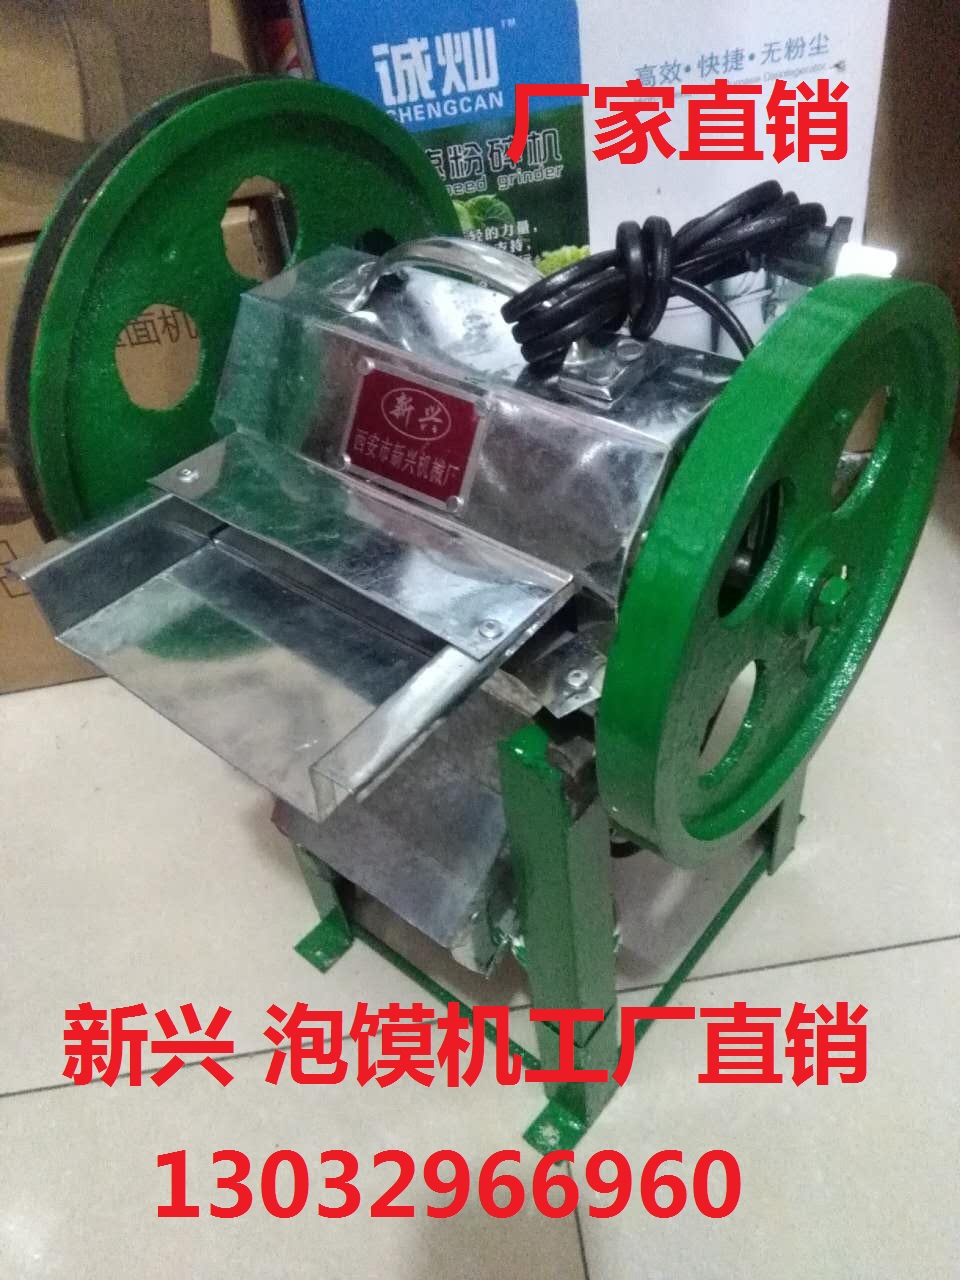 陕西西安打馍机碎馍机牛羊肉泡馍机器商用大口径葫芦头店掰馍机